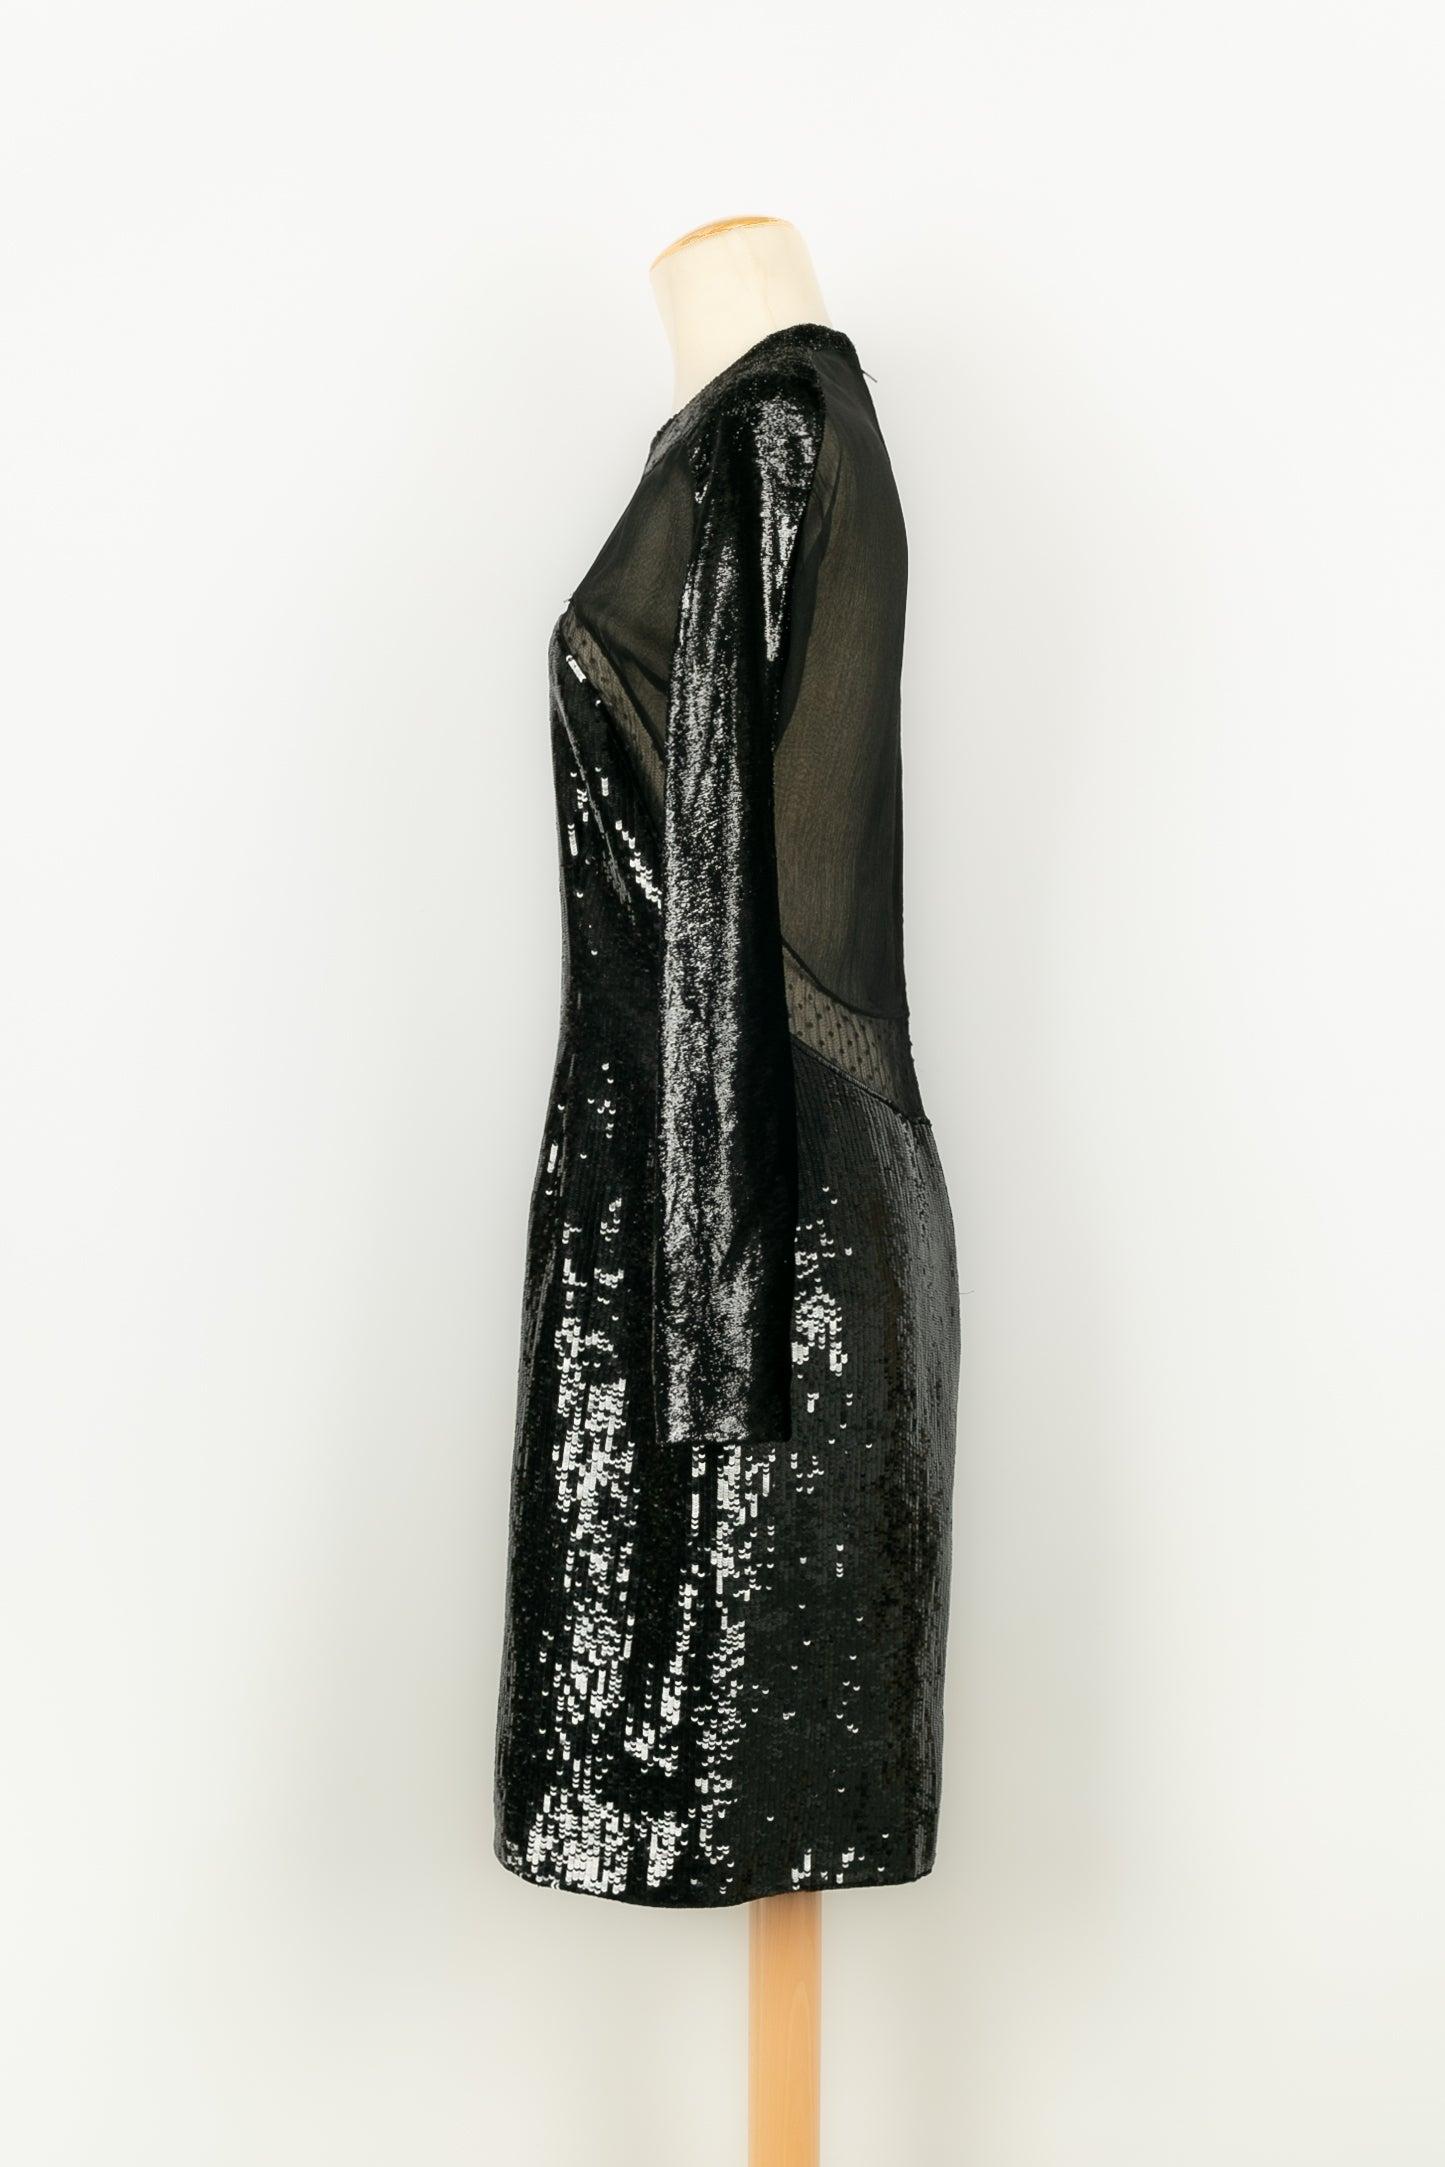 Saks Fifth Avenue - Robe de soirée noire à manches longues en mousseline de soie, velours et paillettes. Pas de Label de taille ni de composition, il convient à un 38FR.

Informations complémentaires :
Condit : Très bon état.
Dimensions : Largeur